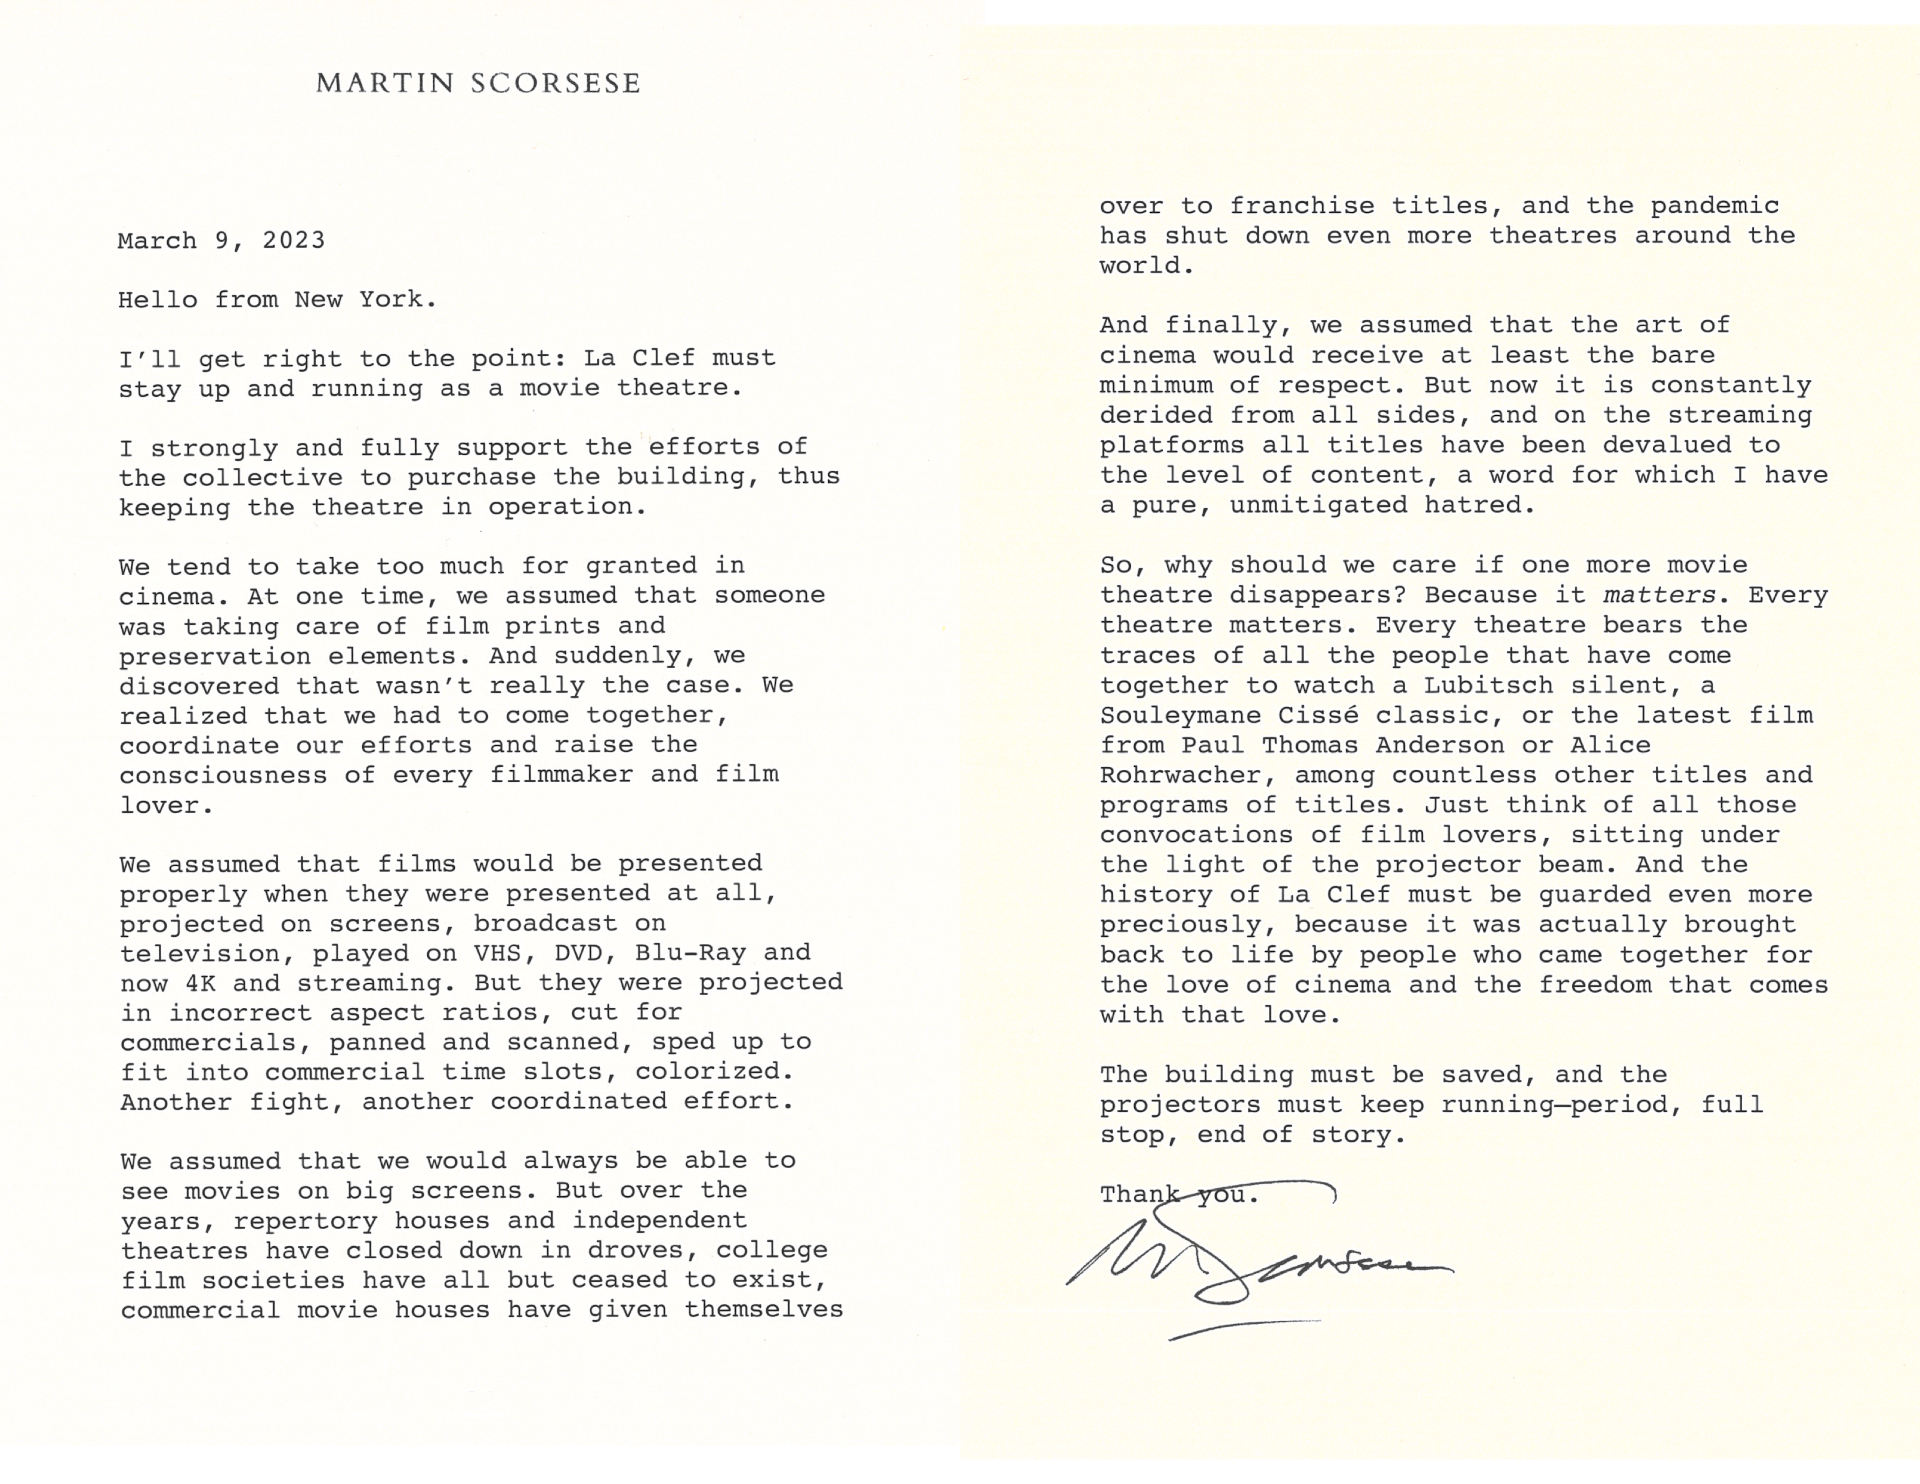 Respond letter from Martin Scorsese